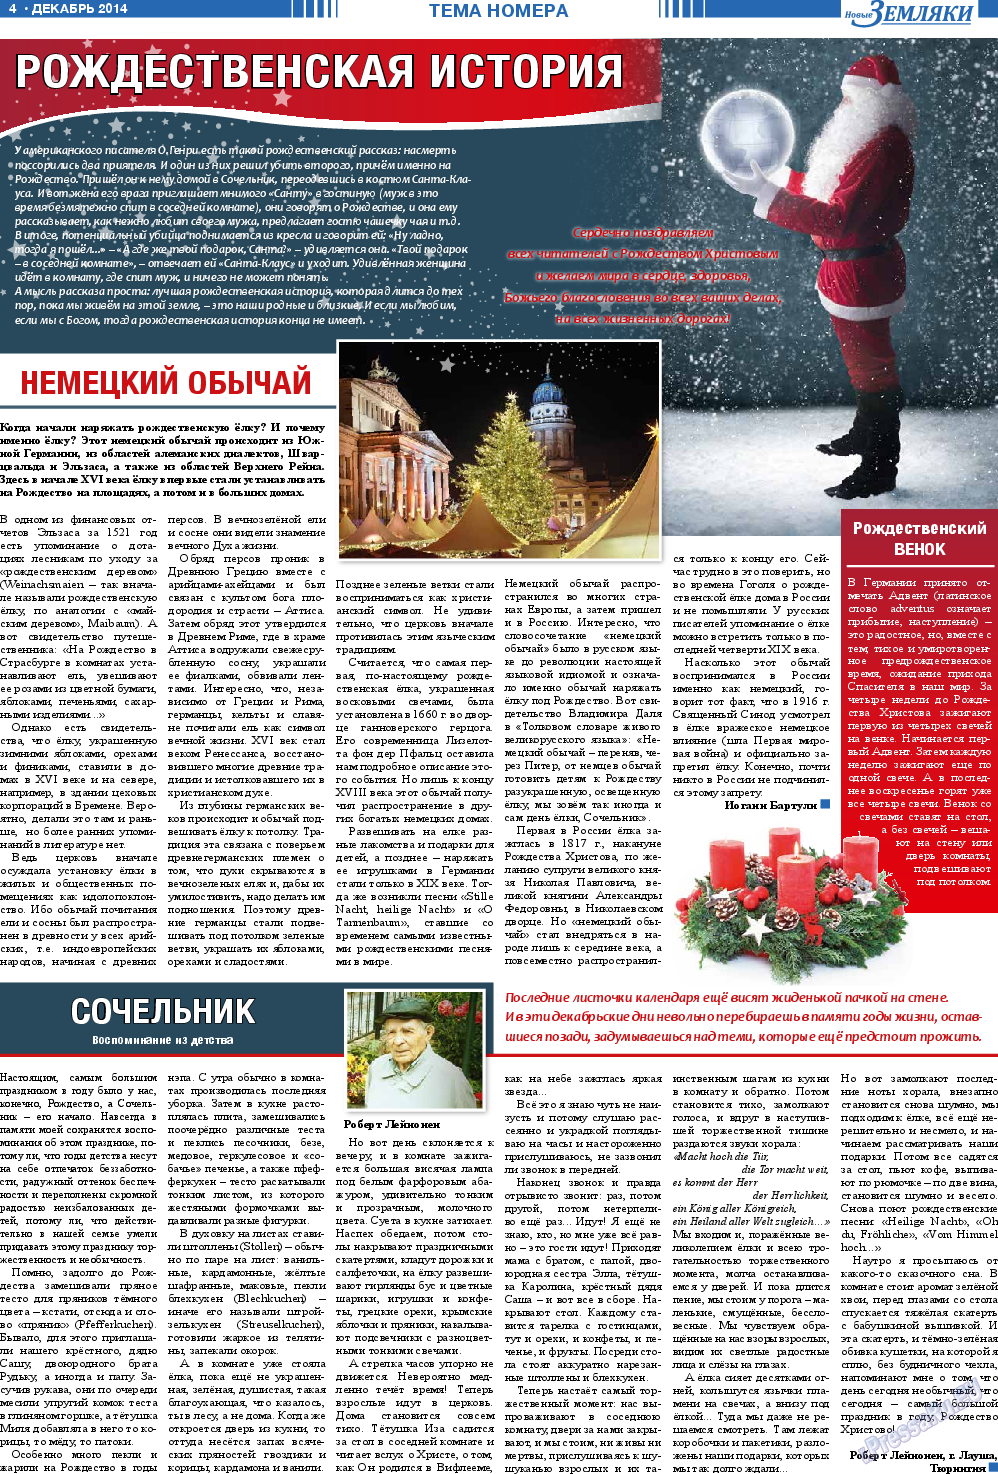 Новые Земляки, газета. 2014 №12 стр.4